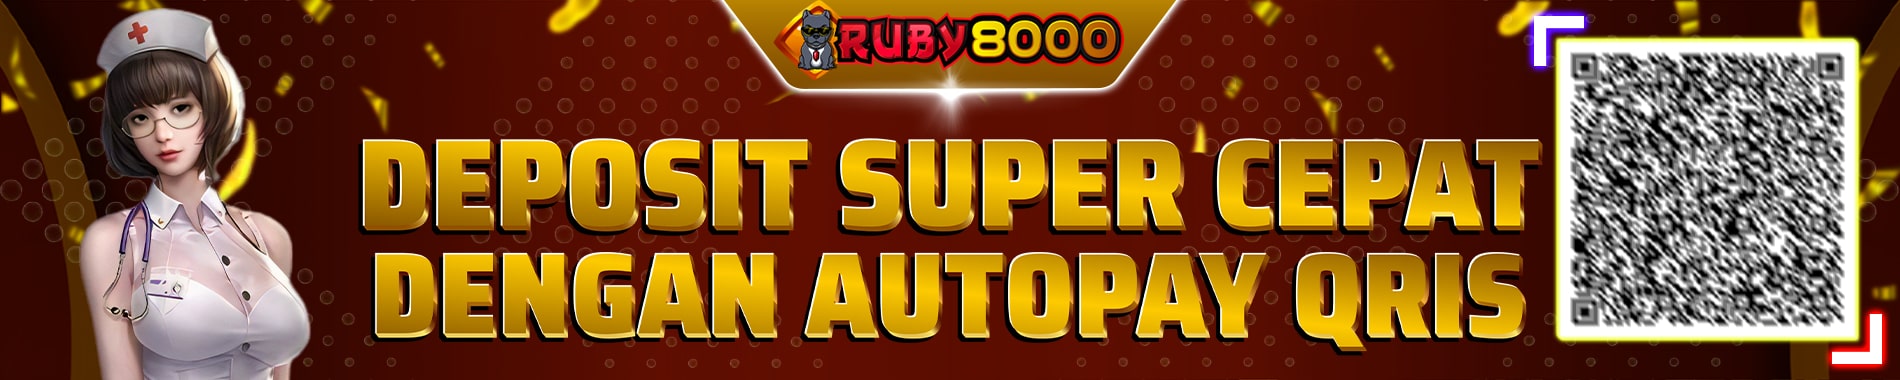 ruby8000